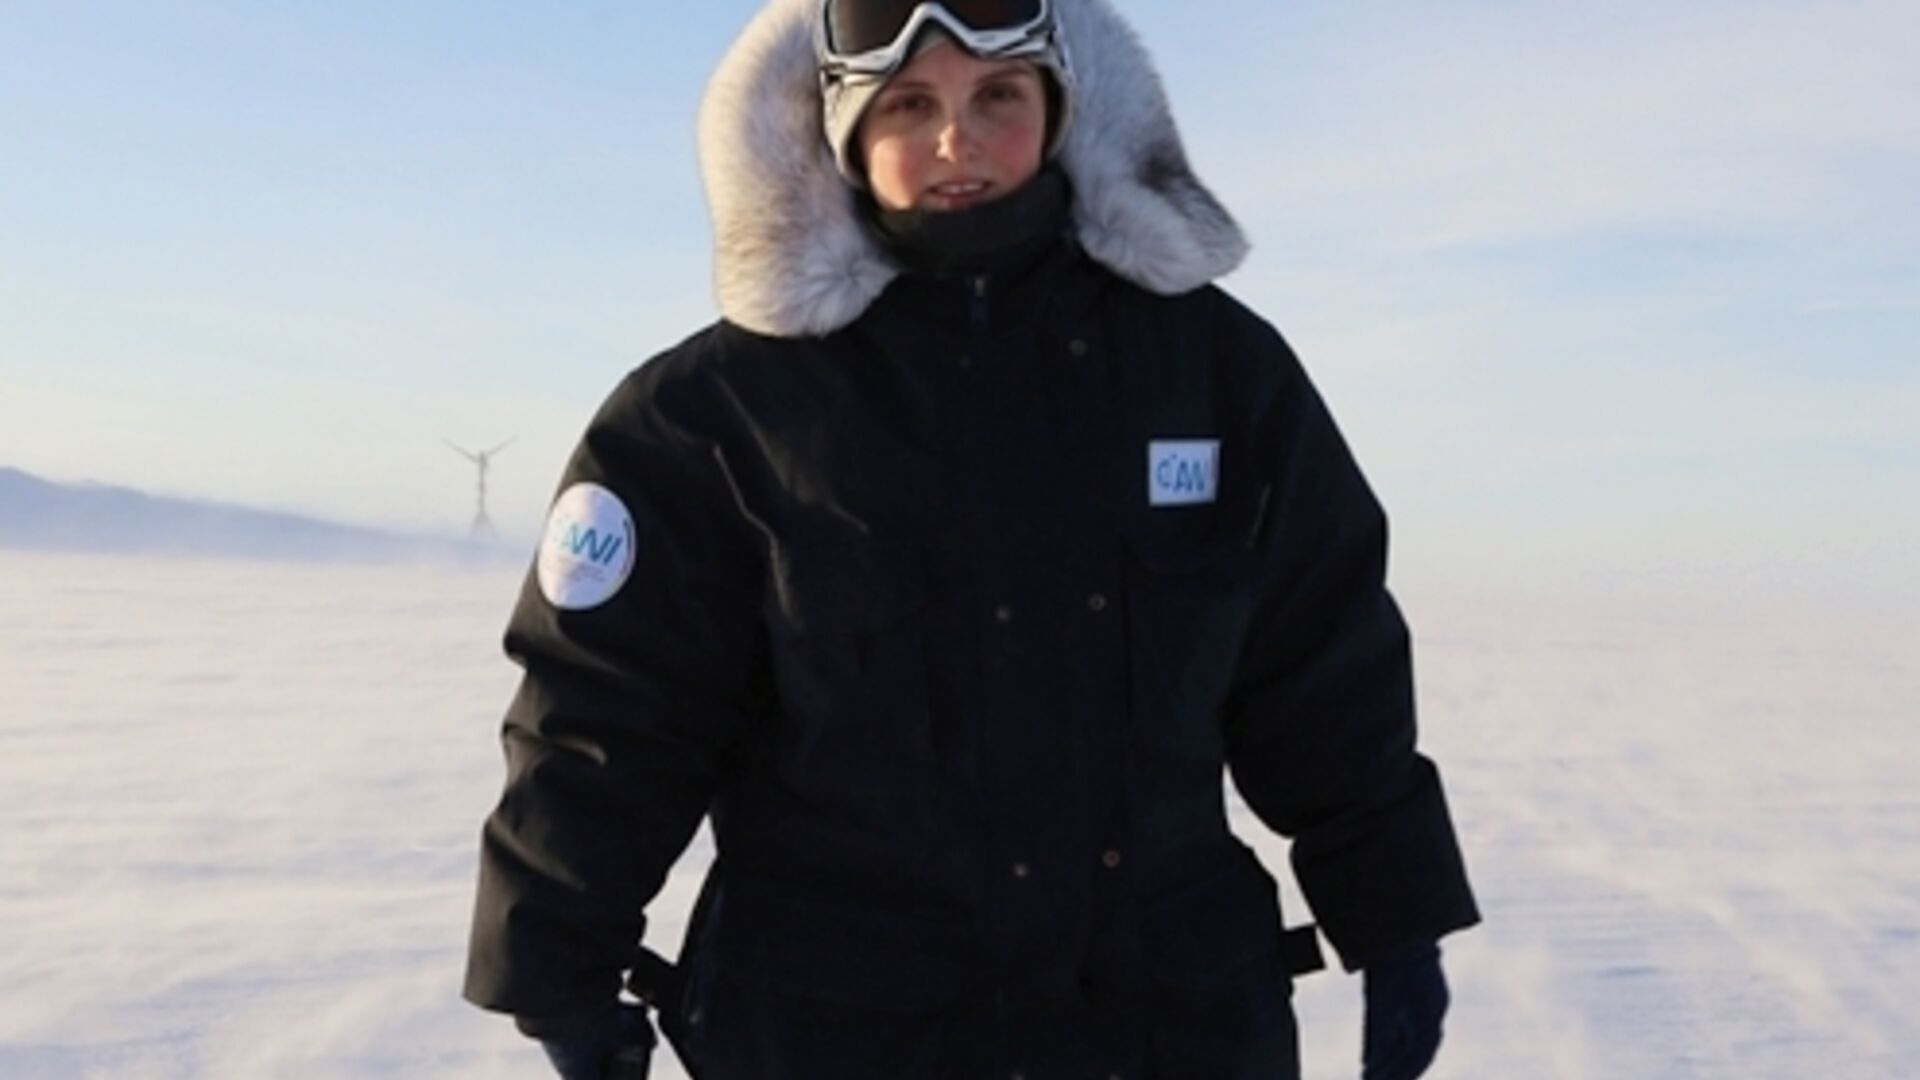 Plastica: lavoro sul campo: la ricercatrice artica e responsabile dell'osservatorio sul monte “Hoher Sonnblick”, Elke Ludewig, ha raccolto i campioni di nanoplastica insieme al suo team di lavoro: in precedenza, la brava studiosa ha lavorato presso la stazione di ricerca polare tedesca in Antartide